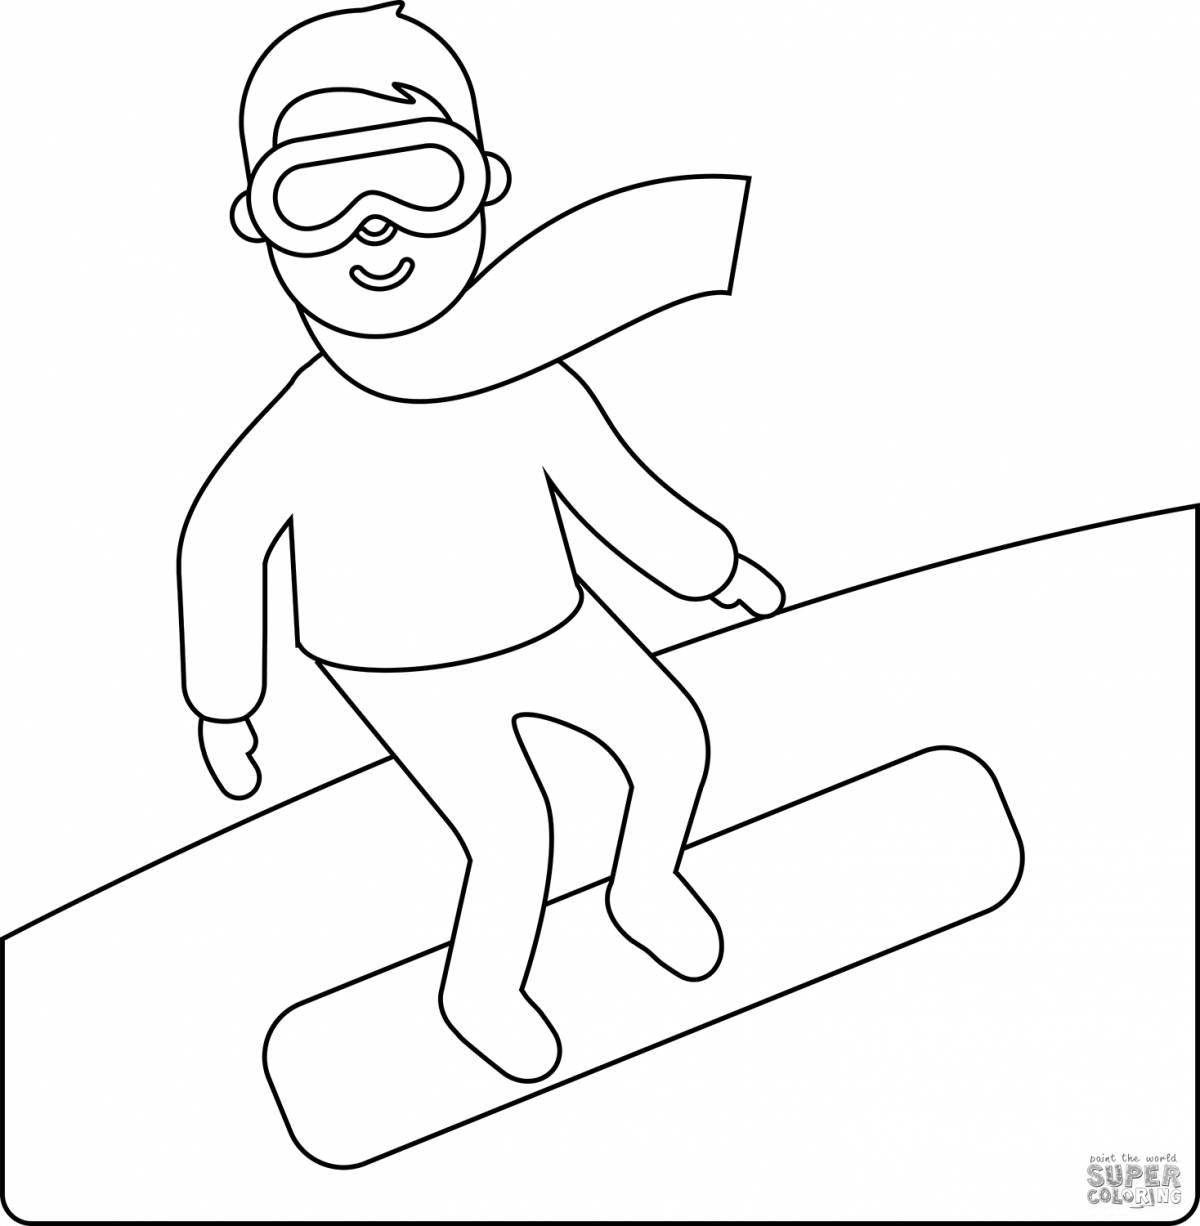 Увлекательная раскраска сноубордиста для детей